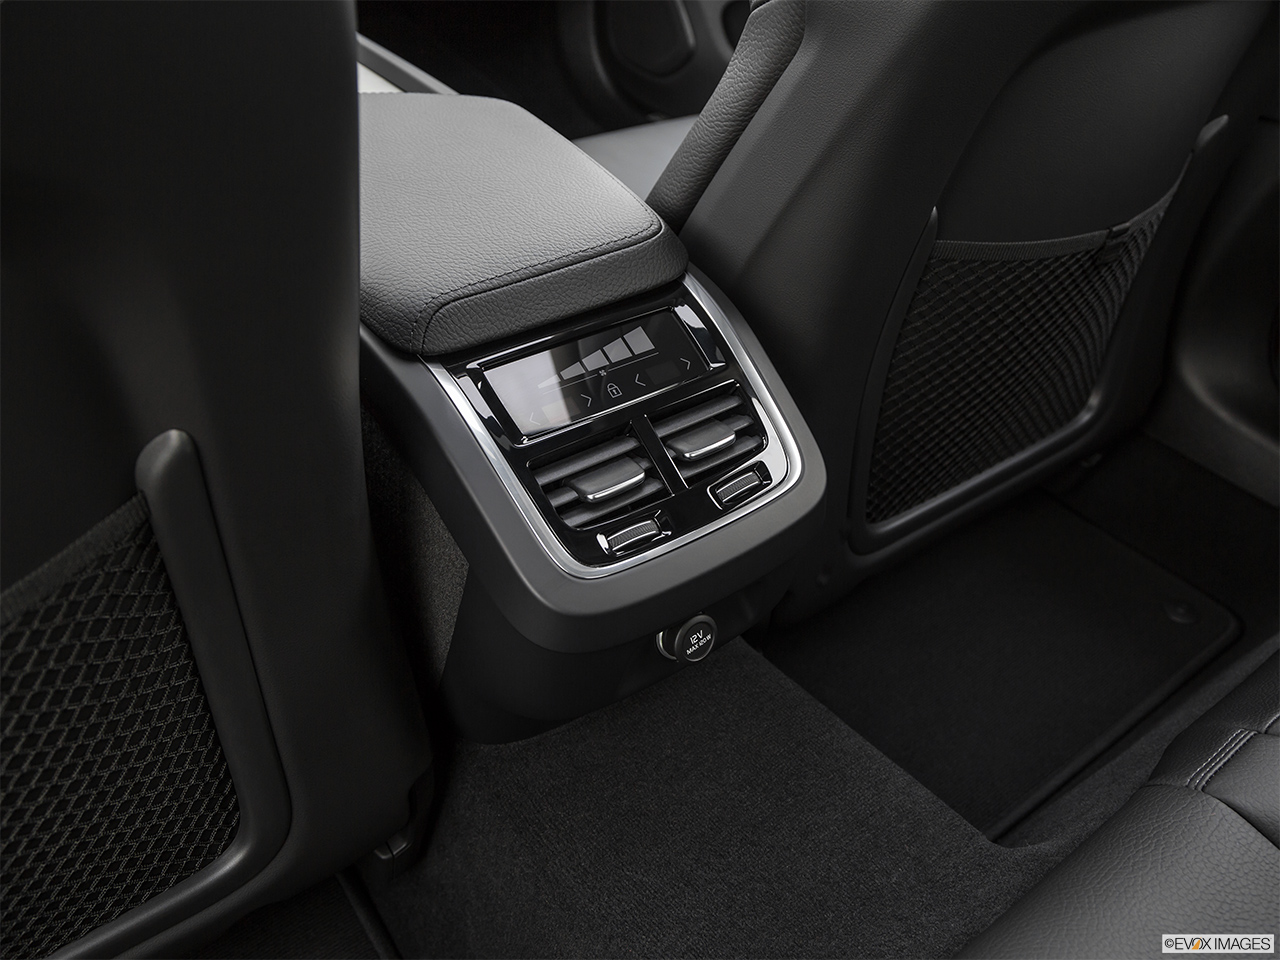 2020 Volvo S60 T5 Inscription Rear A/C controls. 